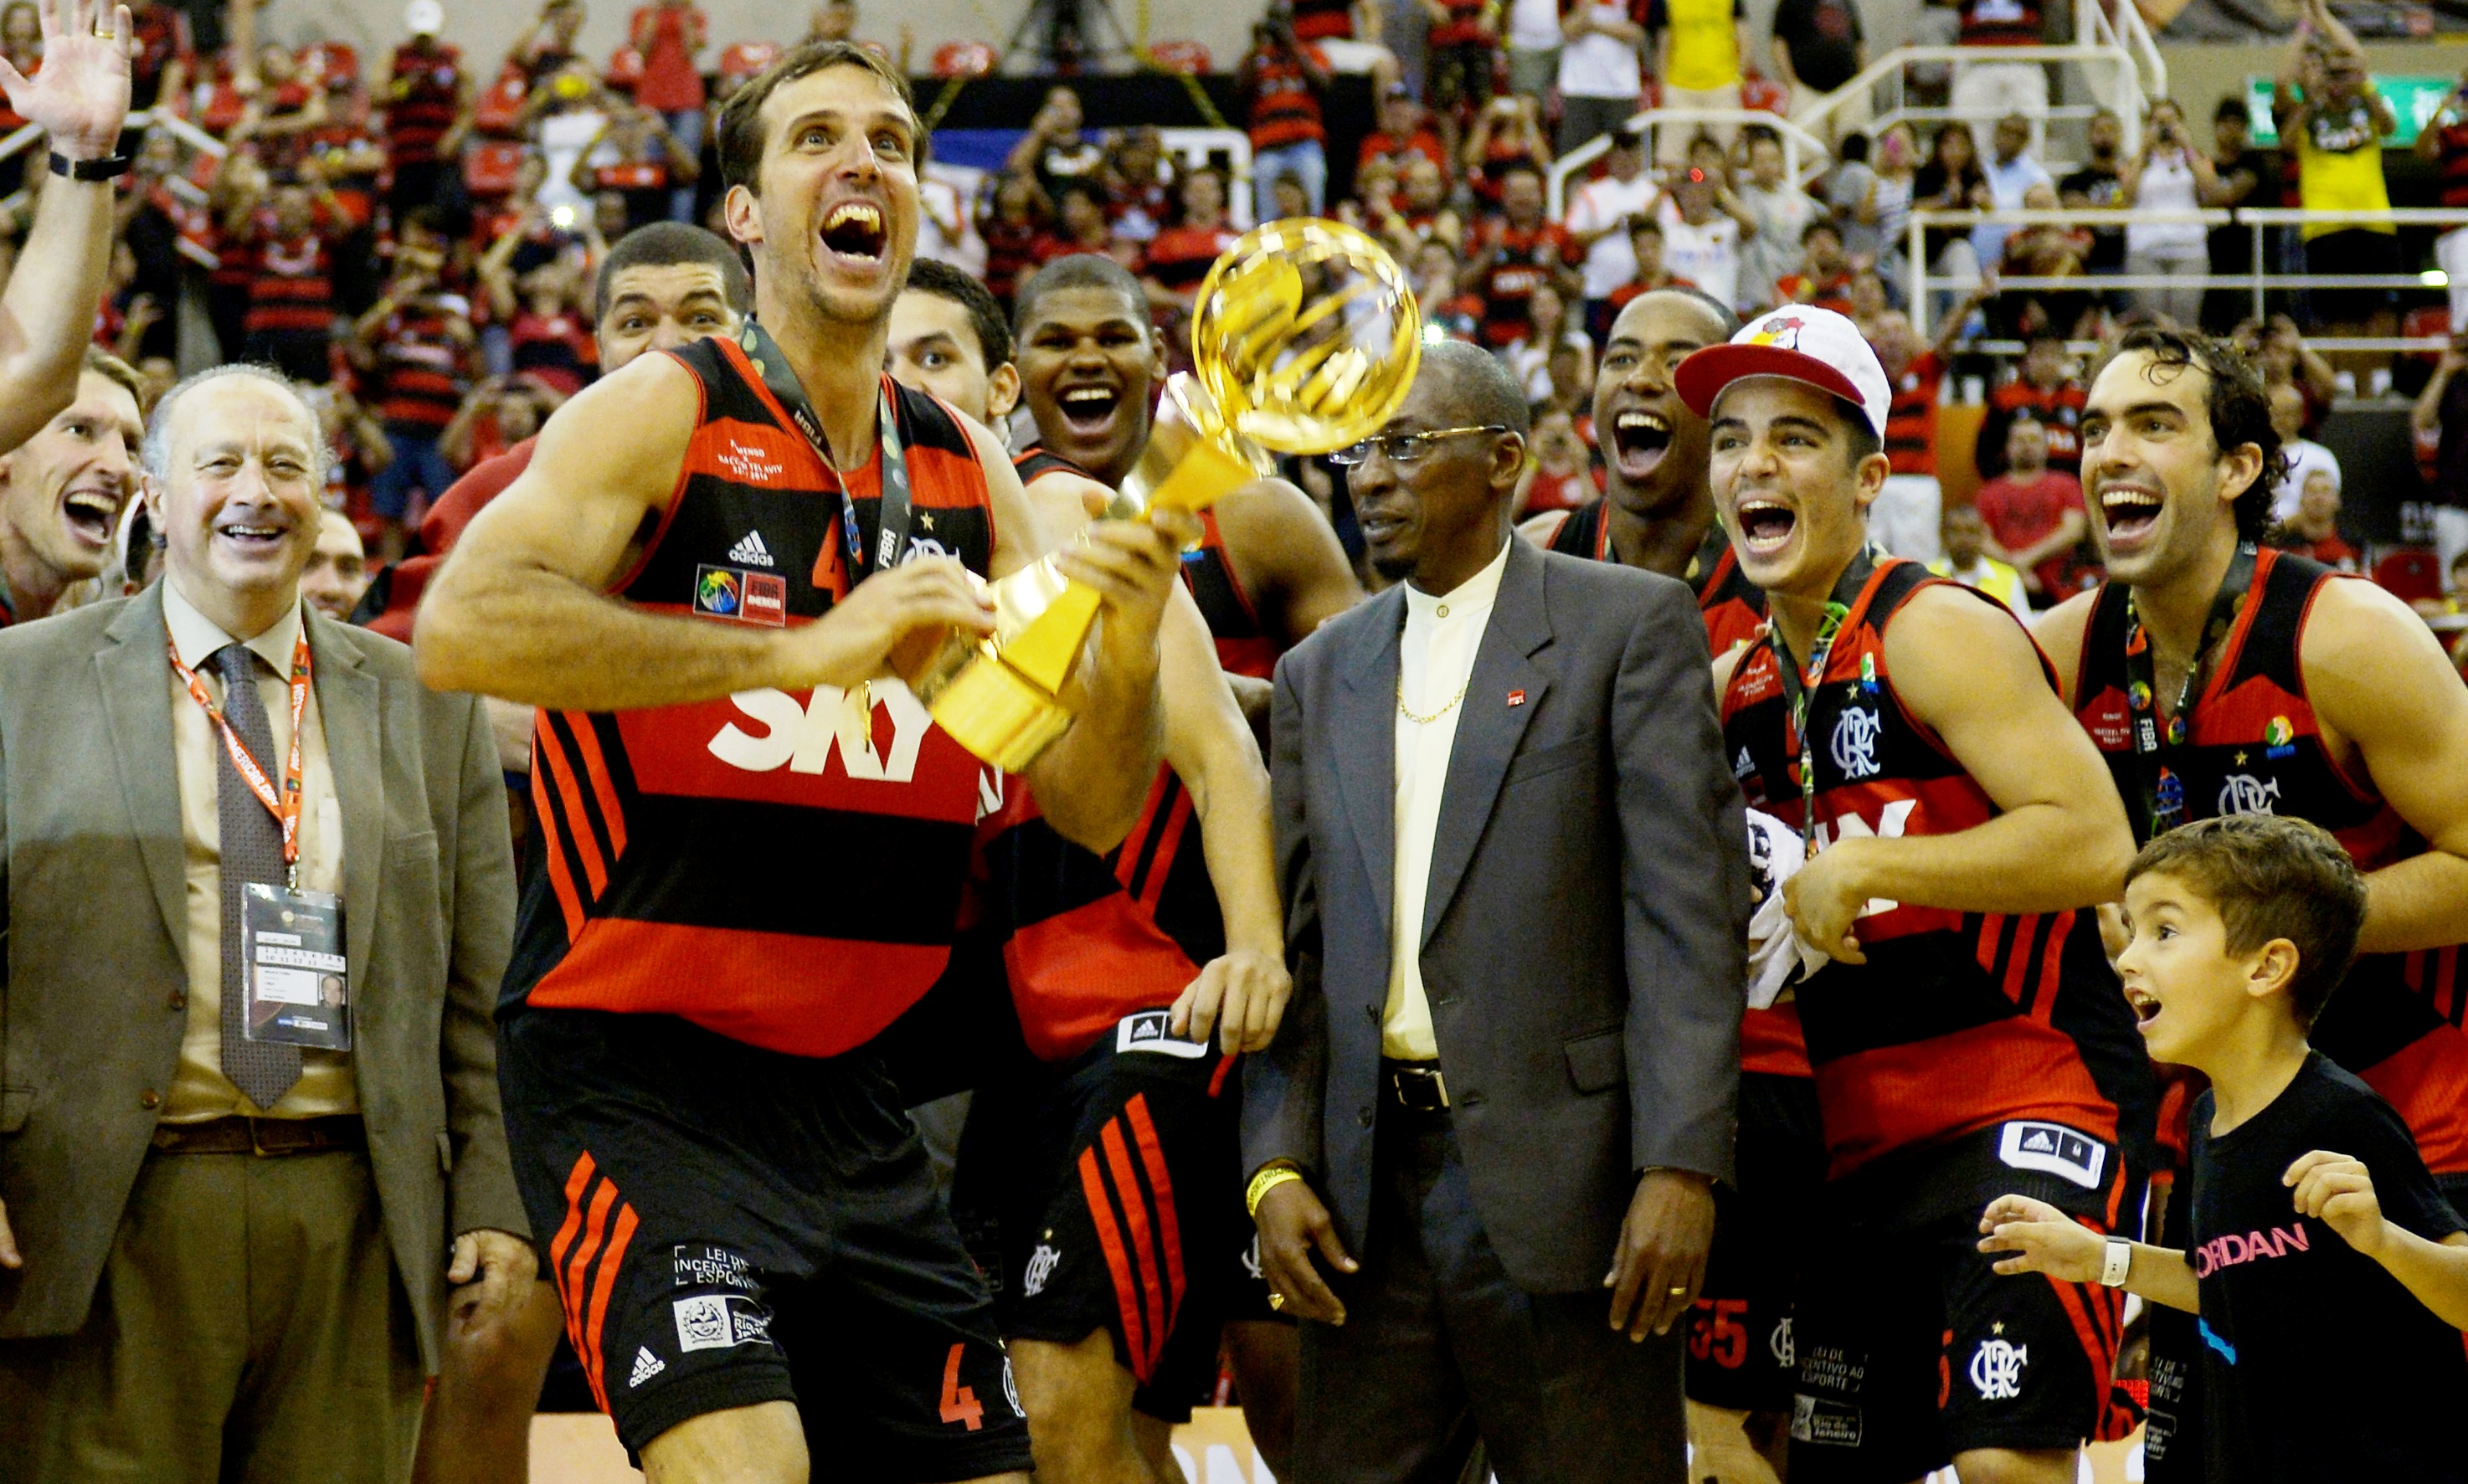 Campeão do mundo em 2014, Flamengo superou o desgaste e fez uma bela fase de classificação no NBB 7 (Gaspar Nóbrega/Inovafoto)